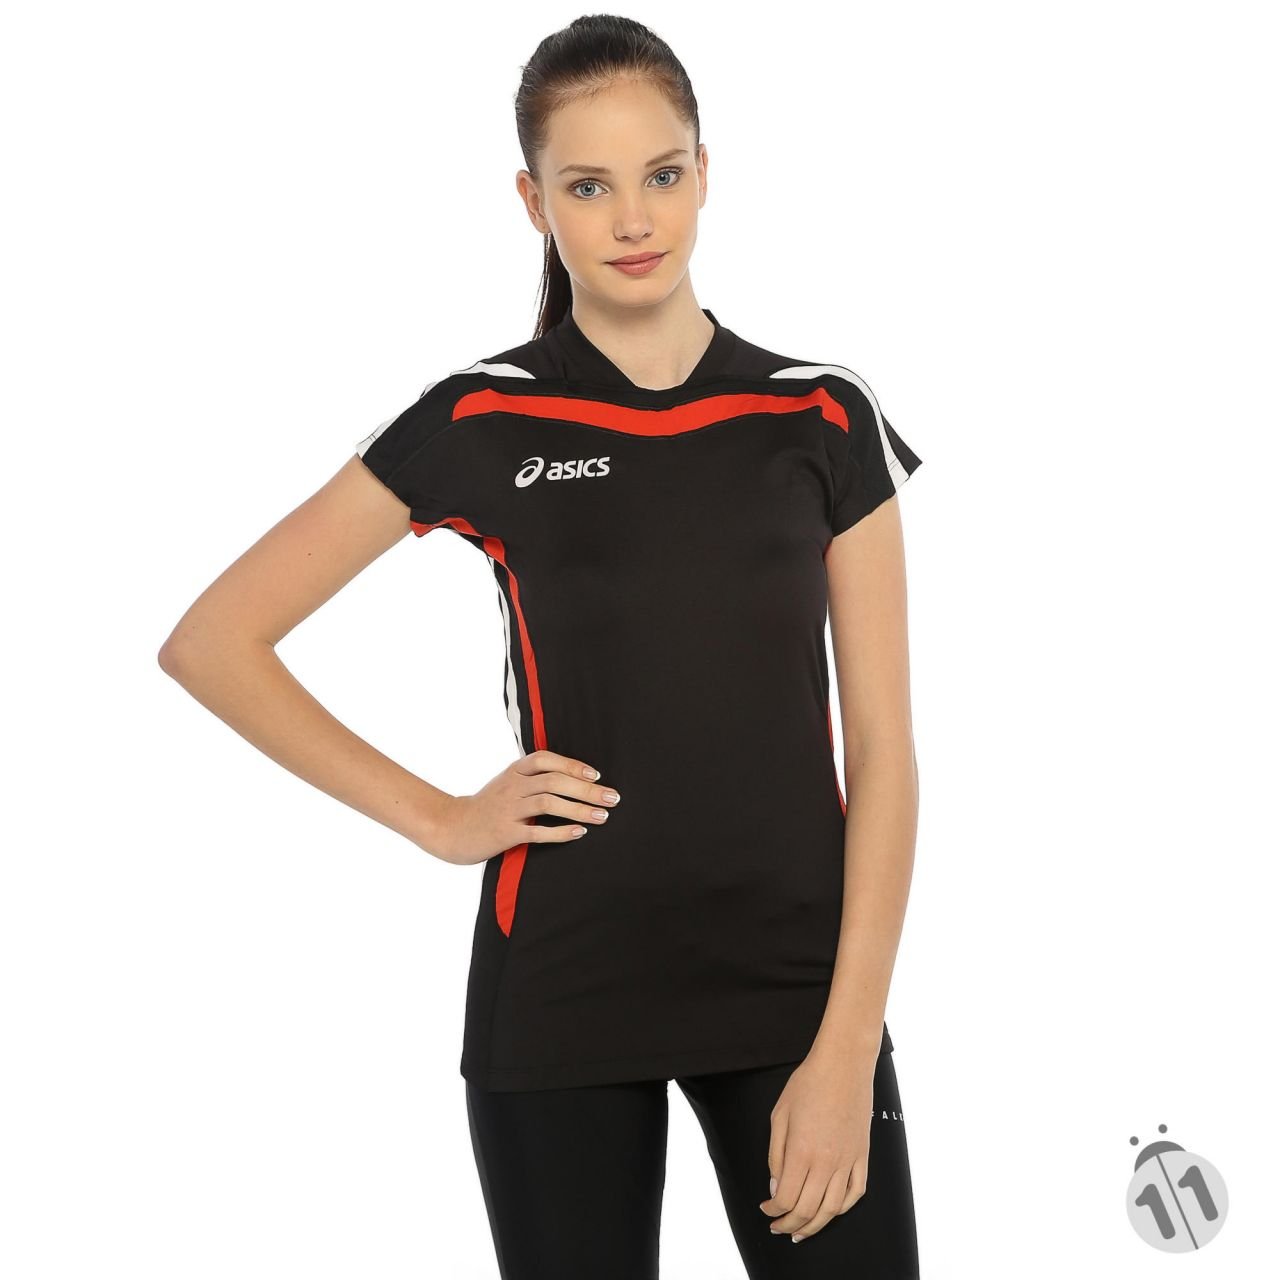 Asics DuoTech Performans DryActive Bayan Siyah Kırmızı Şeritli Kısa Kollu Sporcu Body